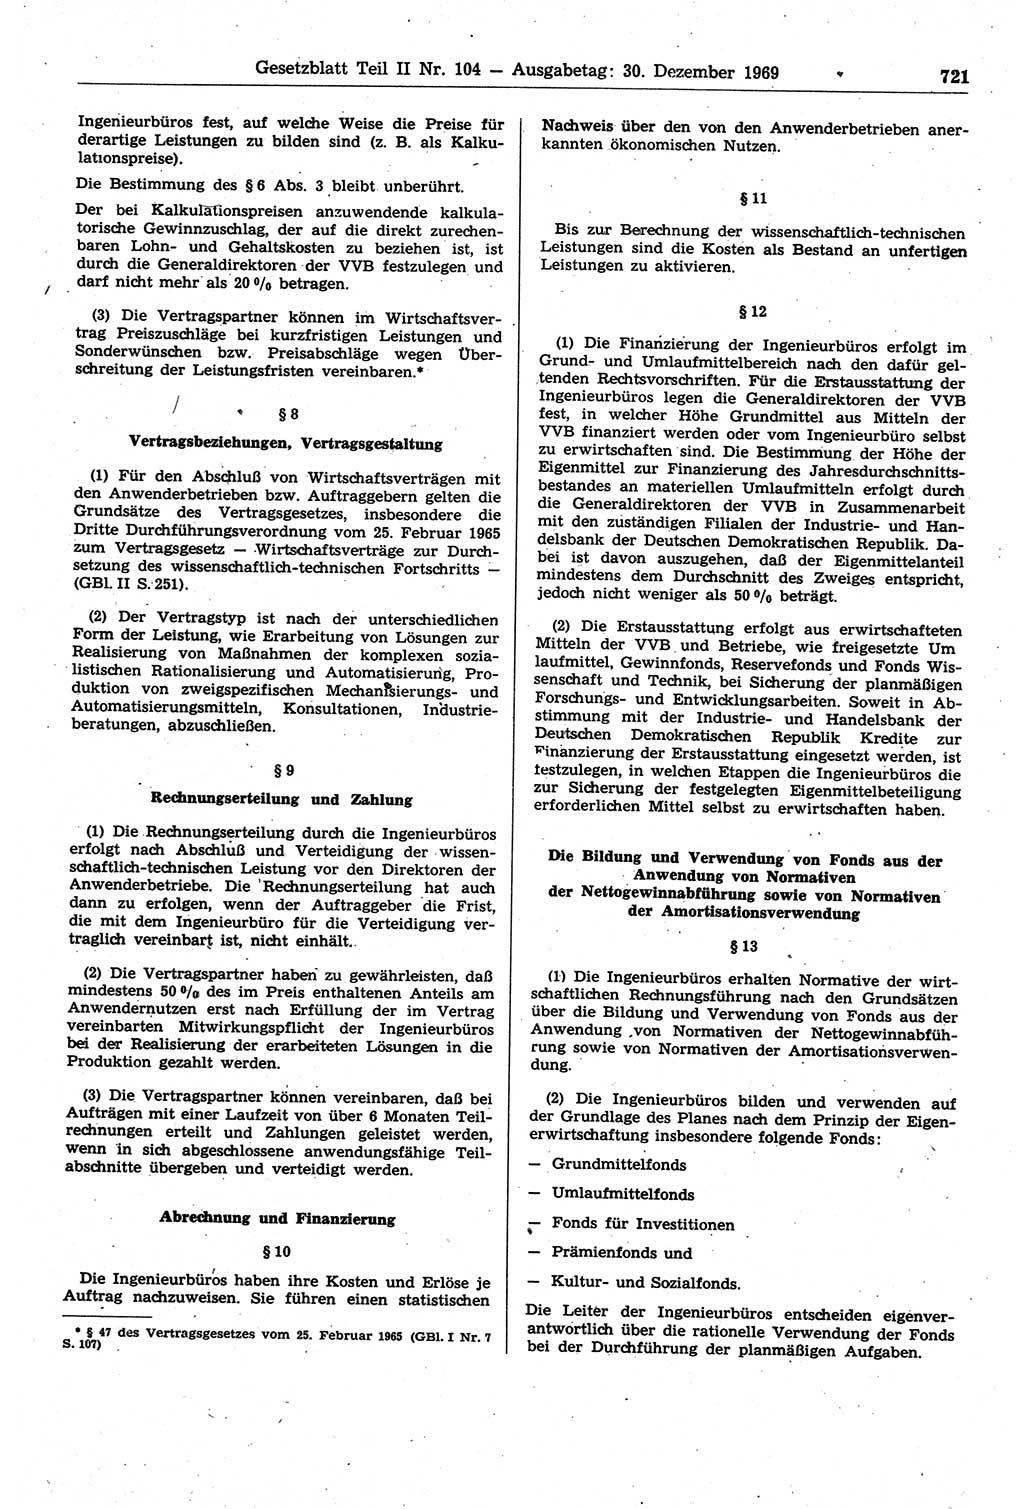 Gesetzblatt (GBl.) der Deutschen Demokratischen Republik (DDR) Teil ⅠⅠ 1969, Seite 721 (GBl. DDR ⅠⅠ 1969, S. 721)